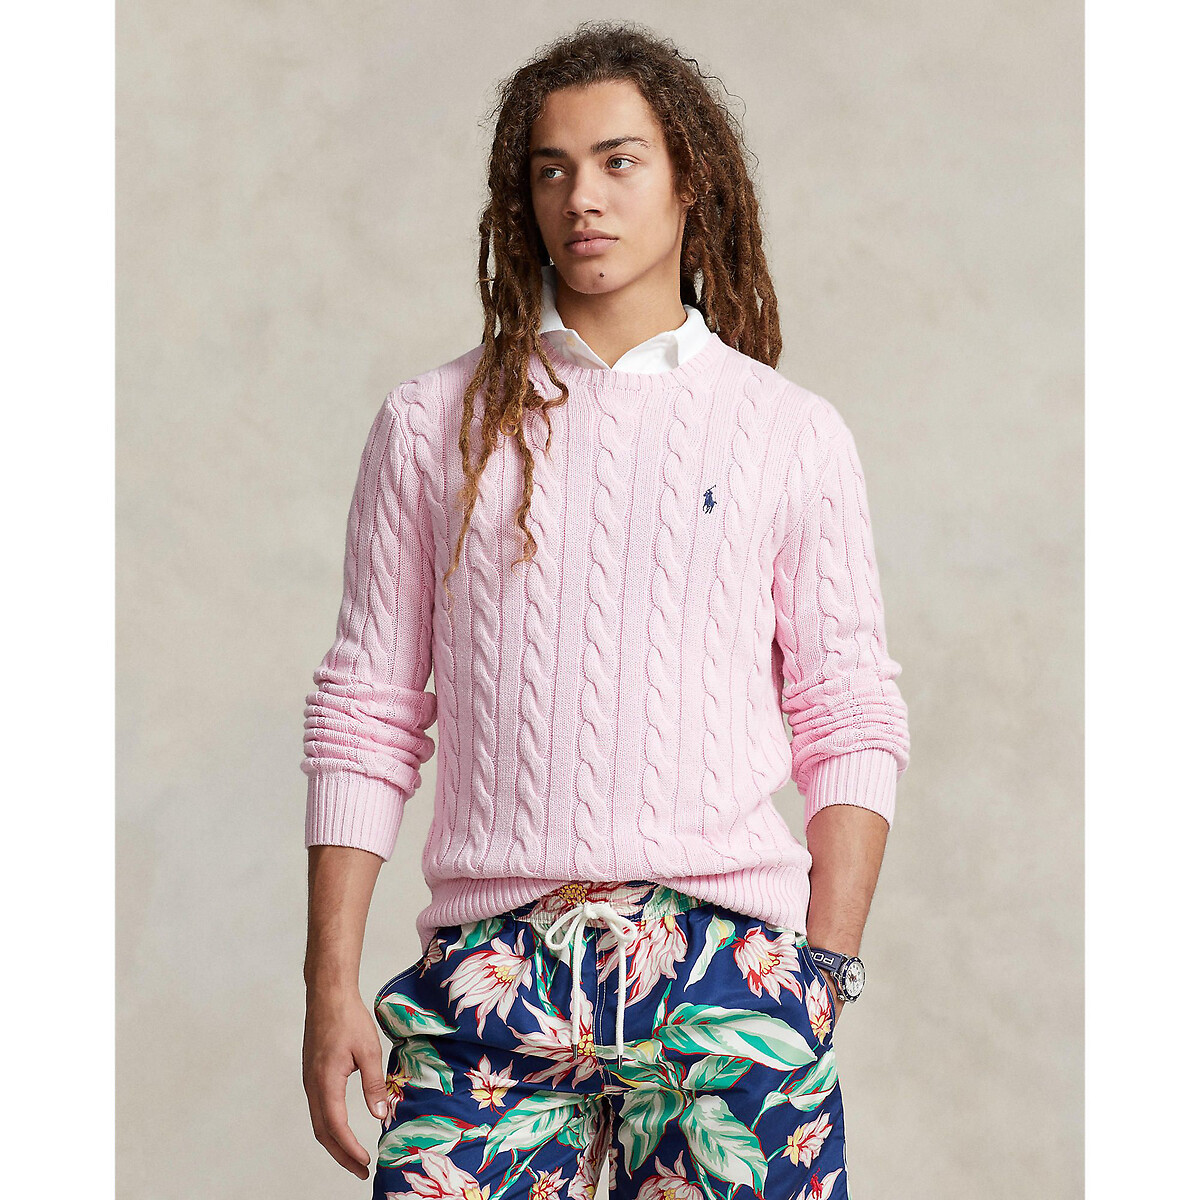 Пуловер с круглым вырезом и узором косы из хлопкового трикотажа XL розовый пуловер с круглым вырезом из трикотажа с узором косы xl розовый